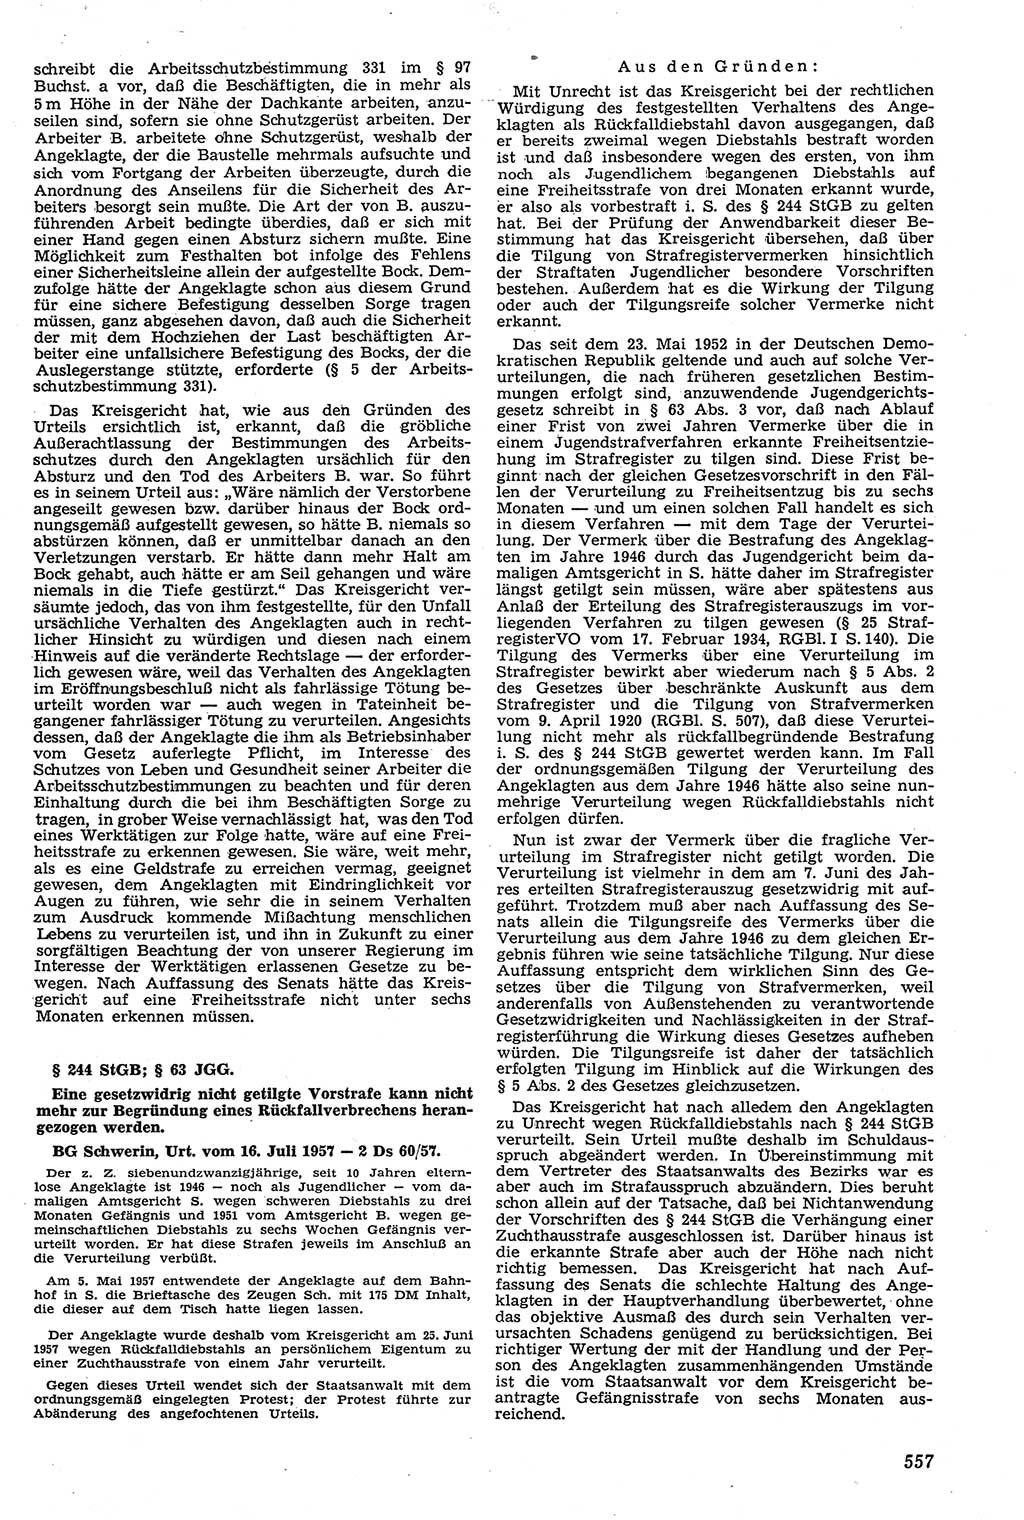 Neue Justiz (NJ), Zeitschrift für Recht und Rechtswissenschaft [Deutsche Demokratische Republik (DDR)], 11. Jahrgang 1957, Seite 557 (NJ DDR 1957, S. 557)